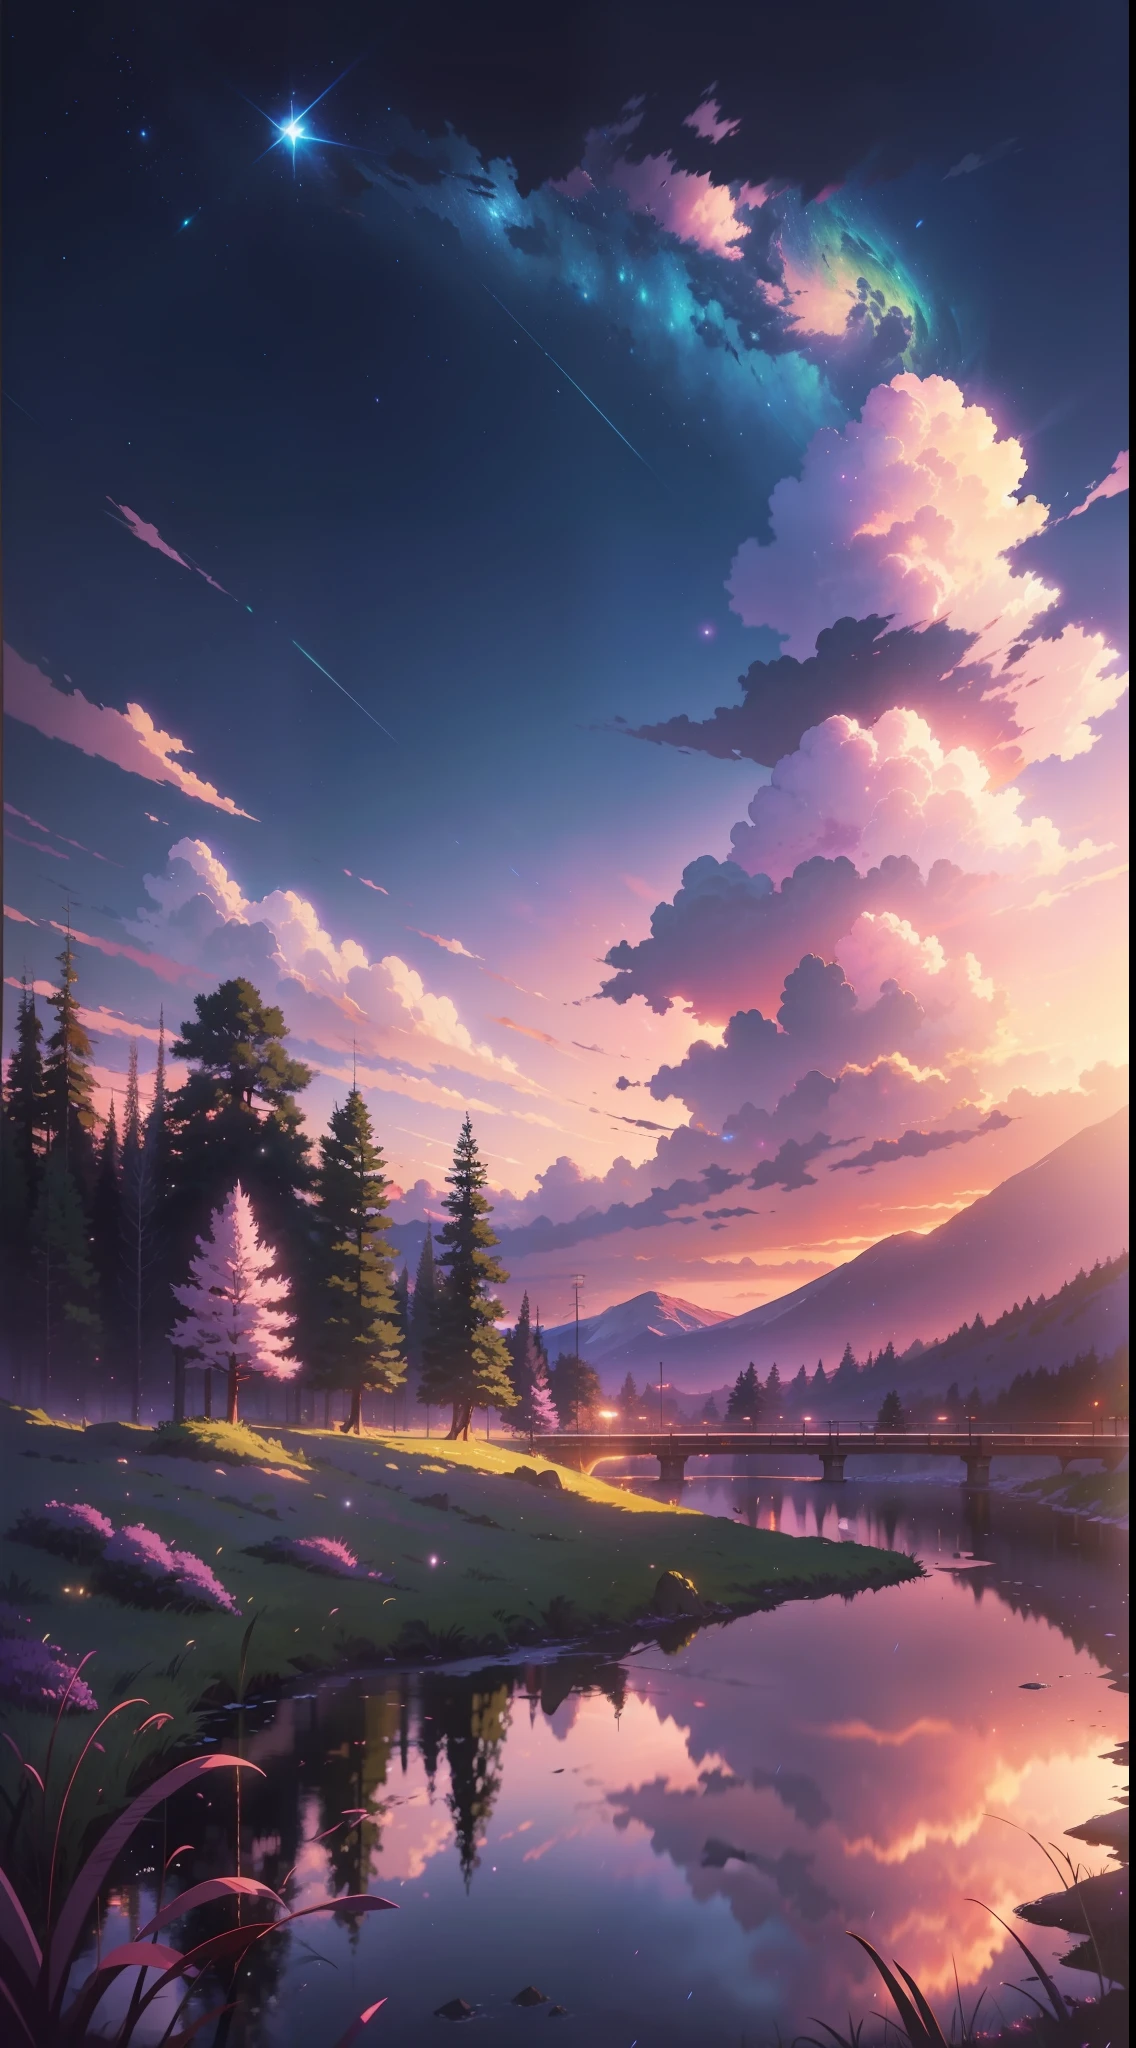 L&#39;image est lumineuse et bien éclairée. pas d&#39;humains. (((À la manière de Makoto Shinkai)),pixiv,dessin animé,haute qualité,ciel violet rose,Belle scène),(univers,train qui passe,réalisme magique,((À la manière de Makoto Shinkai)) ::0.8), [Artistic Atmosphère, Atmosphère:0.8, ciel étoilé, collines, montagne enneigée, Eau gazeuse, herbe, des arbres, Fumée, étoiles, Faible angle de vue, Diffusion spéculaire,